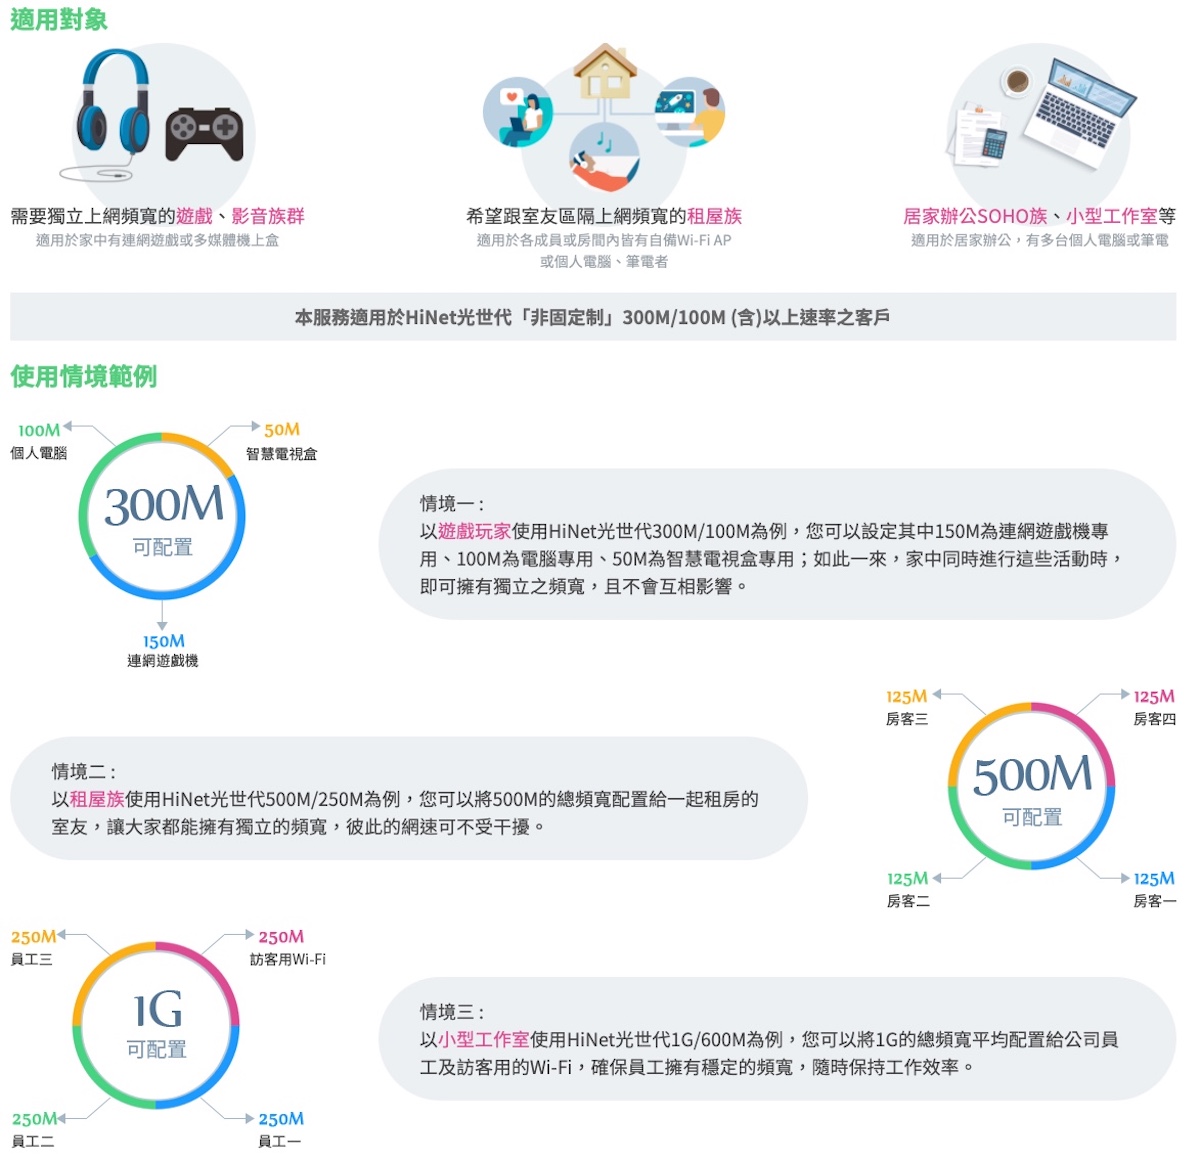 中華電信光世代 500M 頻寬分流服務設定教學